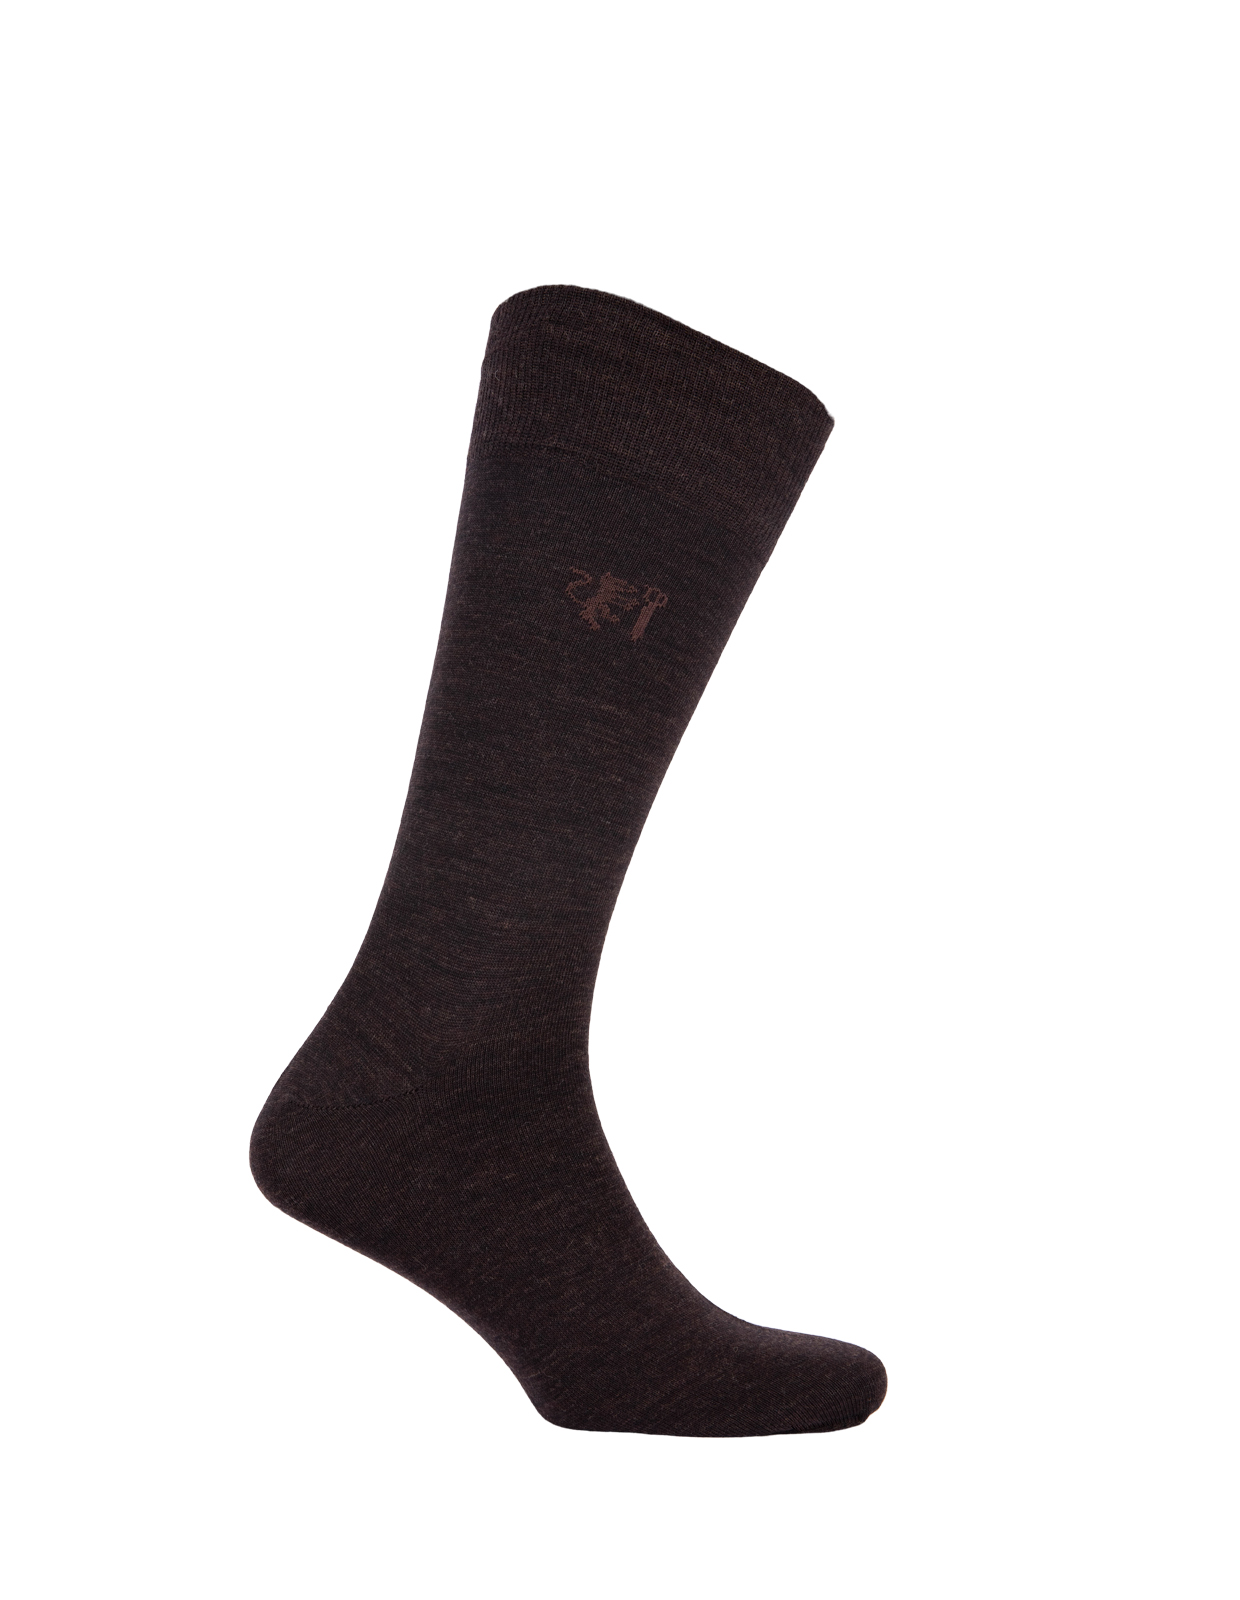 Socks Wool Blend Brown Stl 40-43